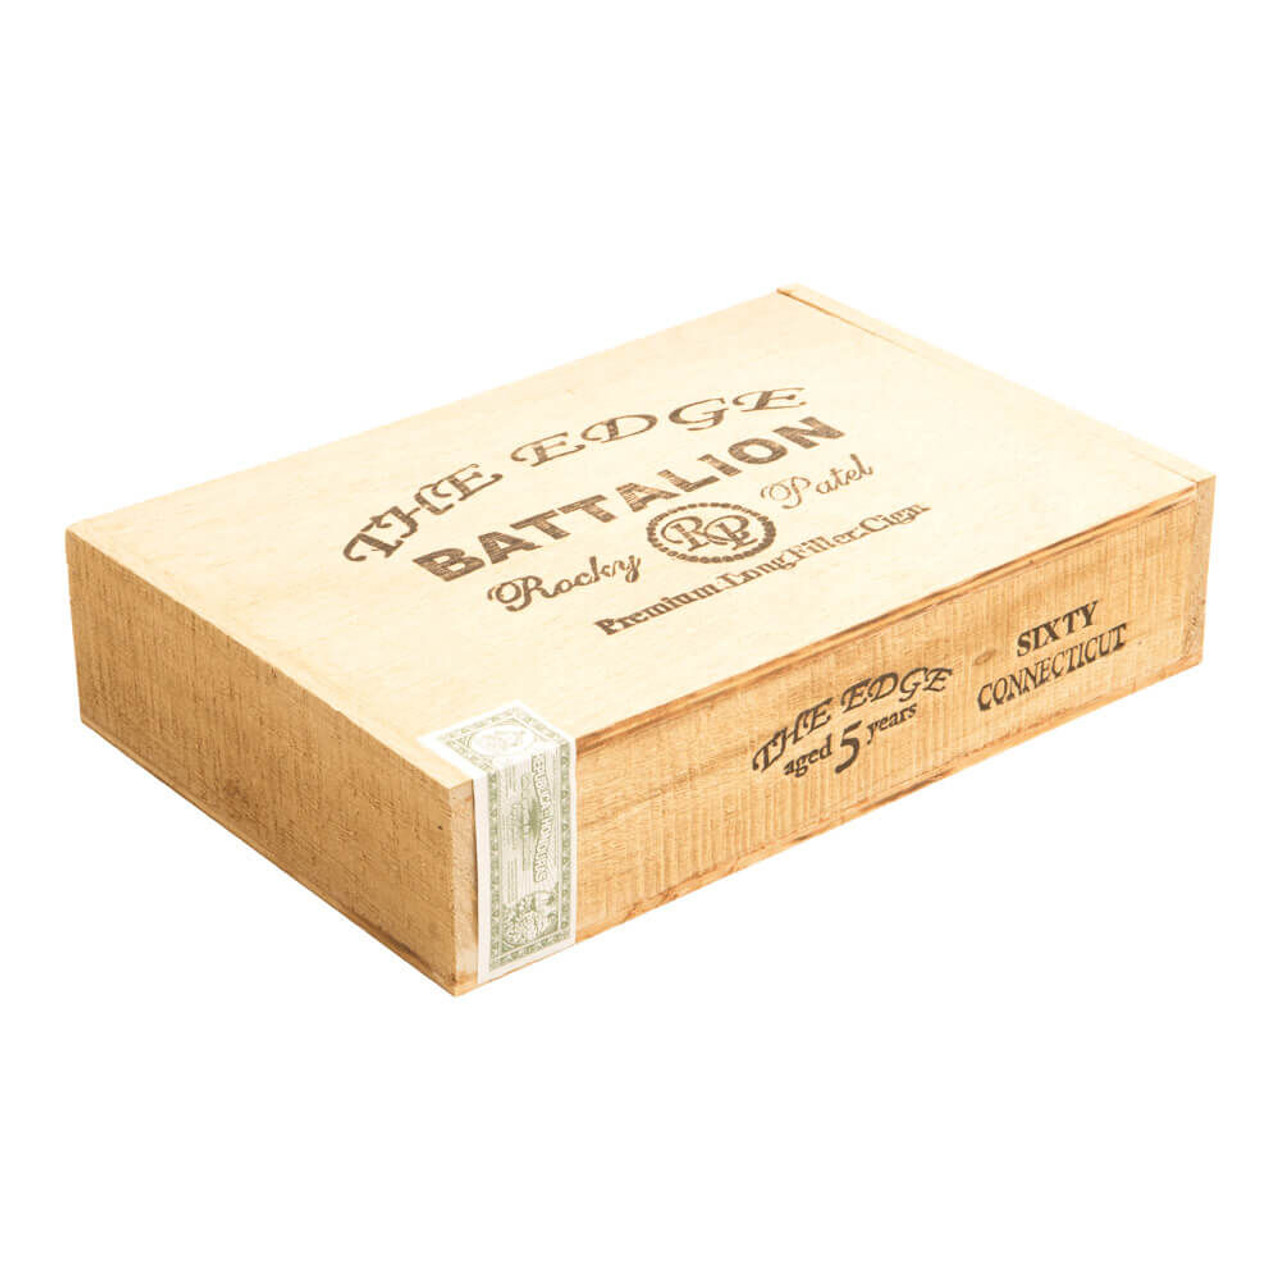 Rocky Patel The Edge Connecticut Battalion Cigars - 6 x 60 (Box of 20) *Box